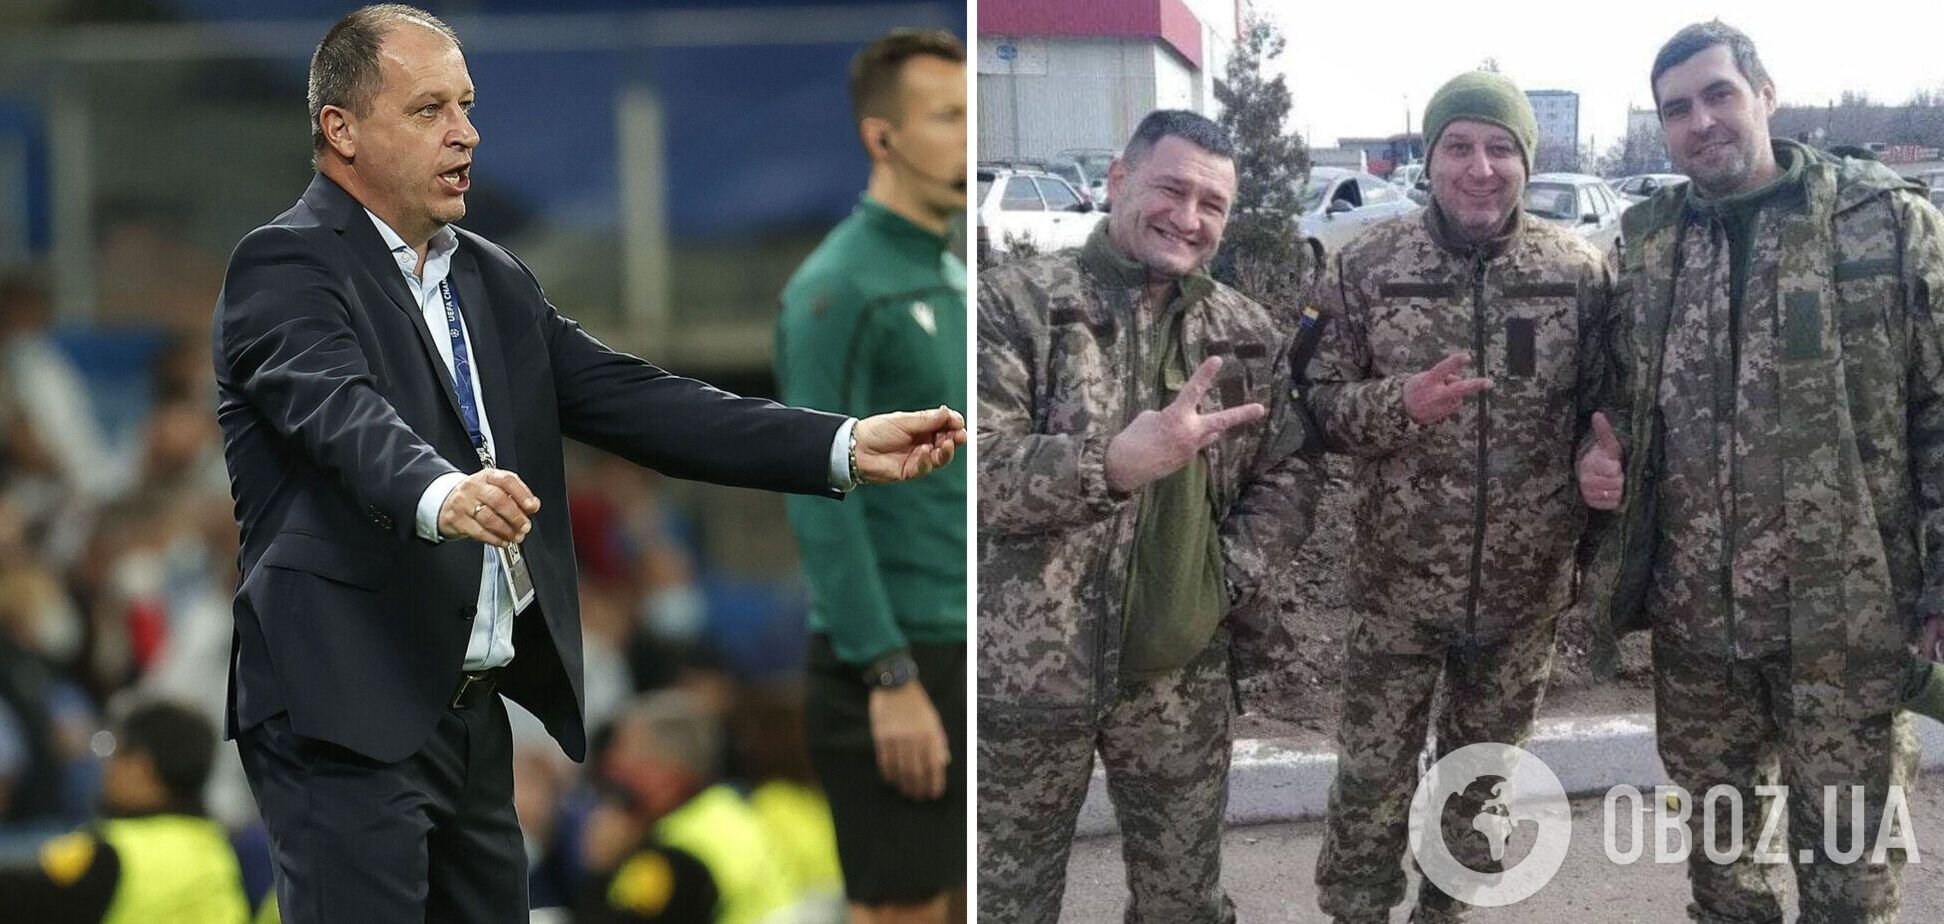 Известный тренер Вернидуб будет воевать за Украину в рядах ВСУ: Путин – это скотина, урод и вампир